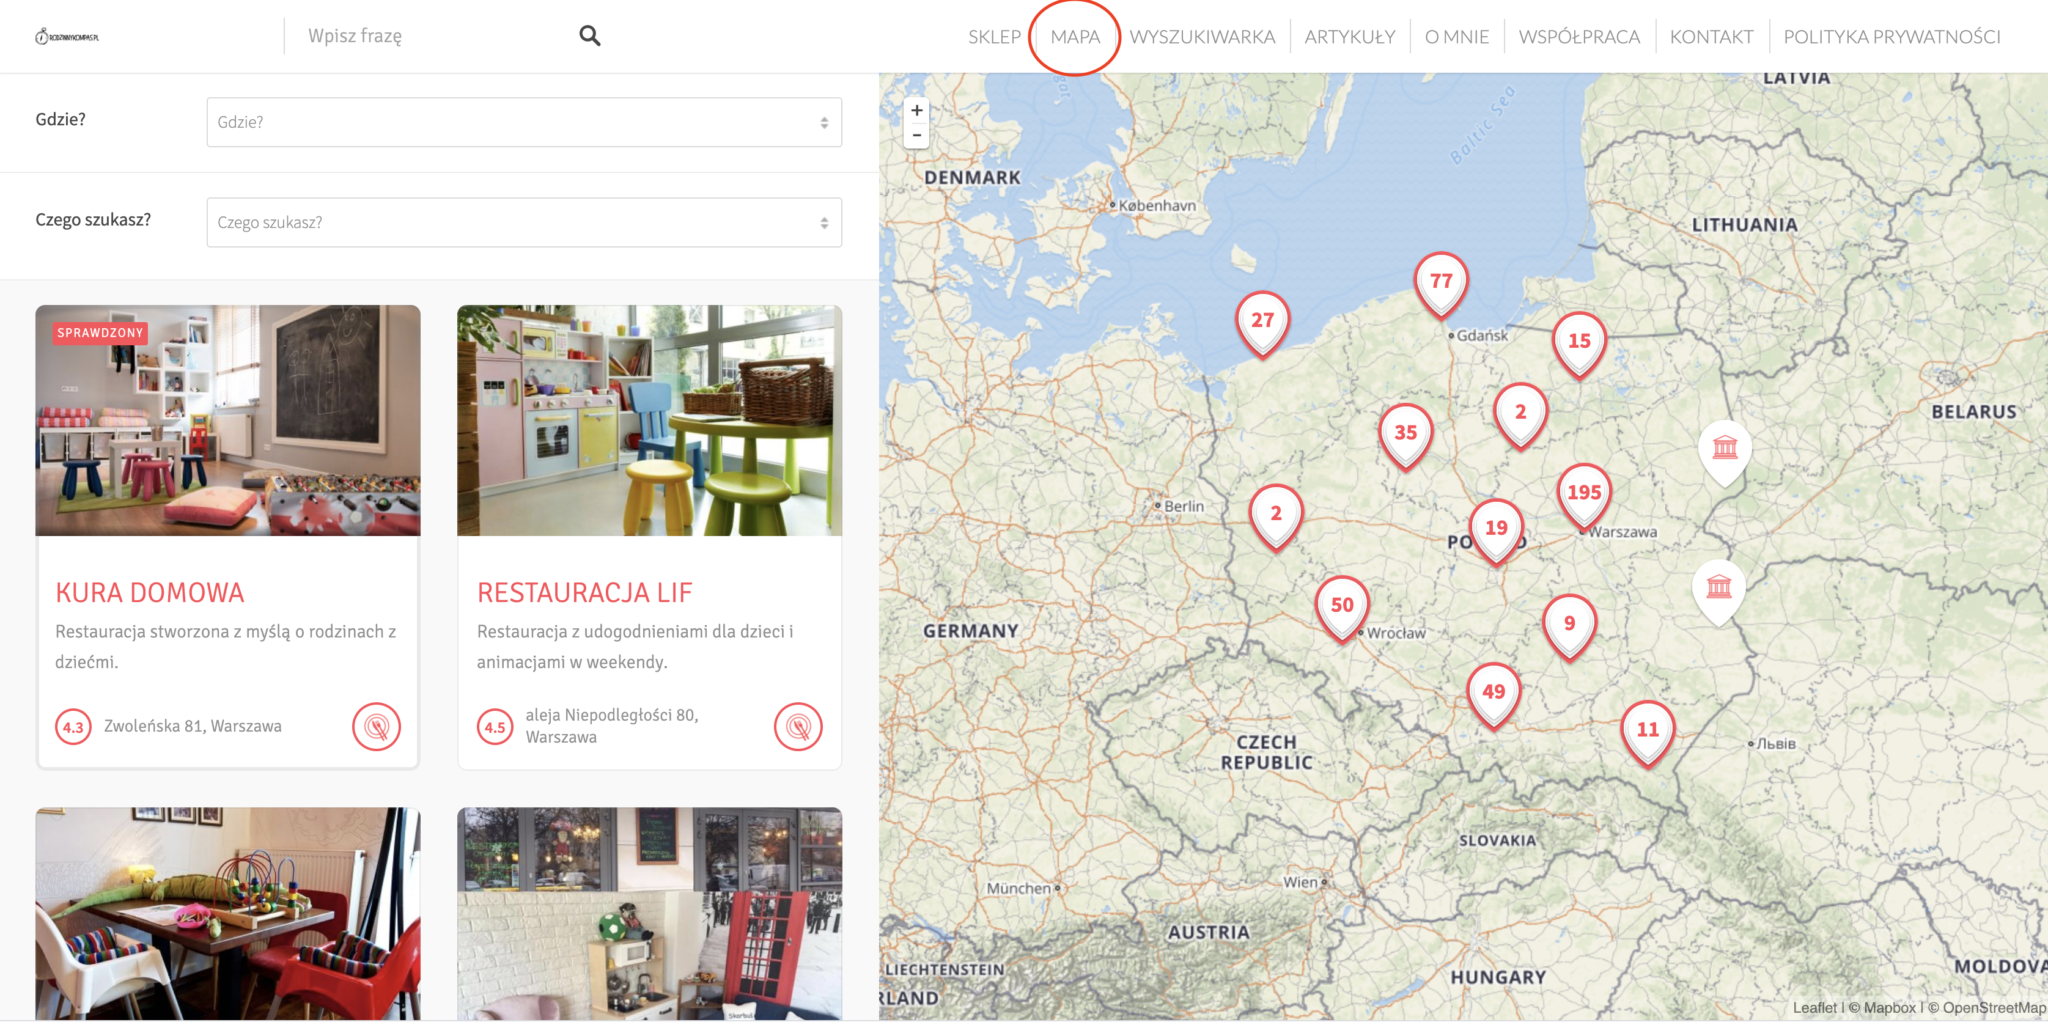 Atrakcje dla dzieci w Polsce - zobacz miejsca przyjazne dzieciom na mapie Rodzinny Kompas 2